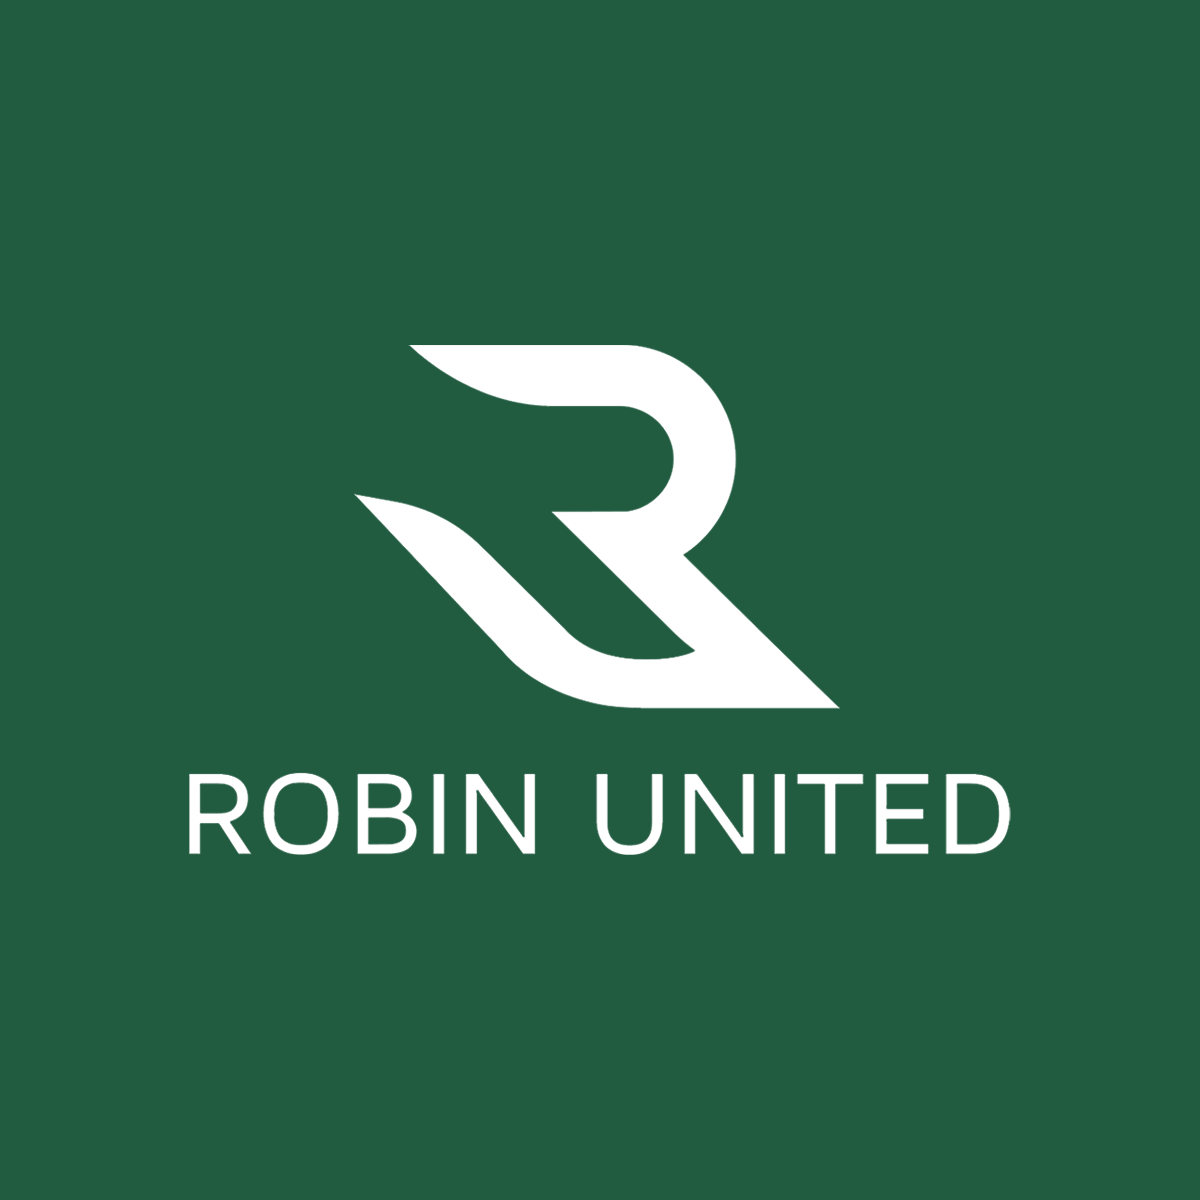 Robin United